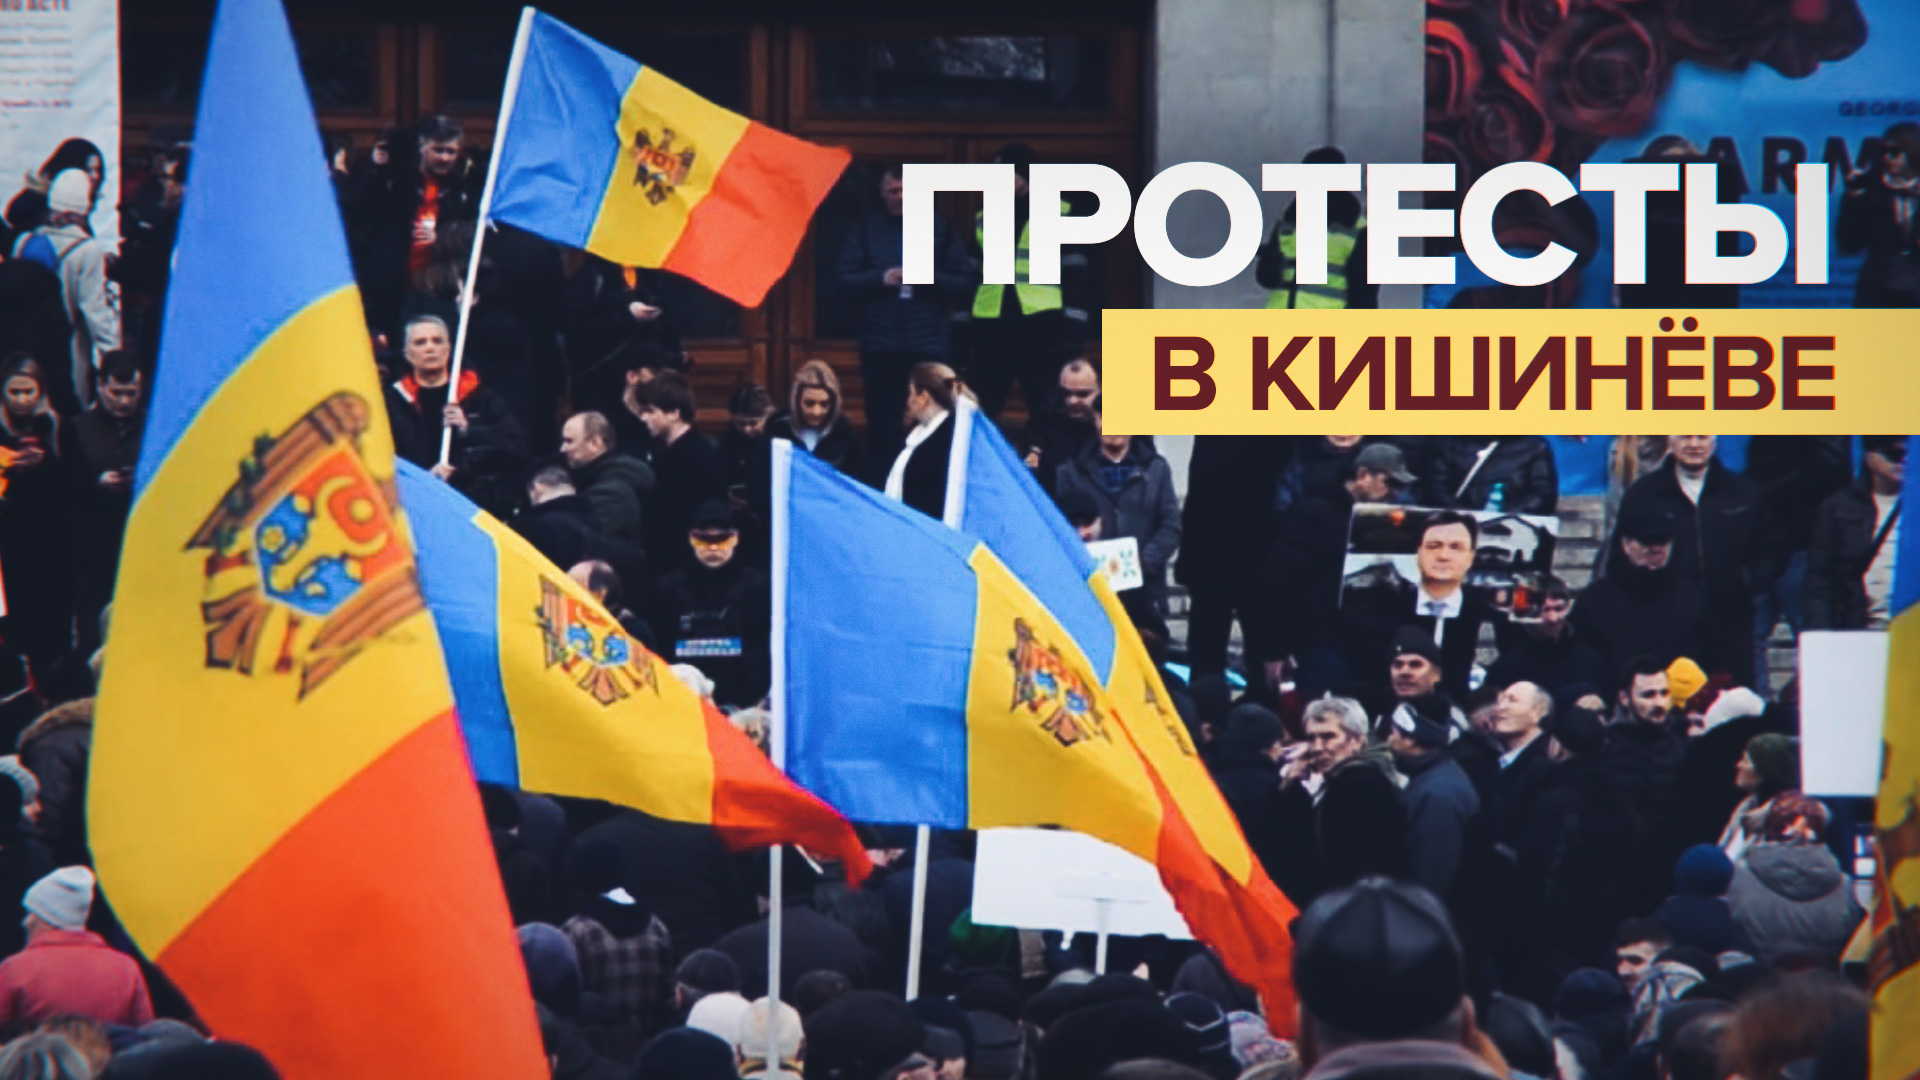 В Кишинёве прошла демонстрация против правительства — видео